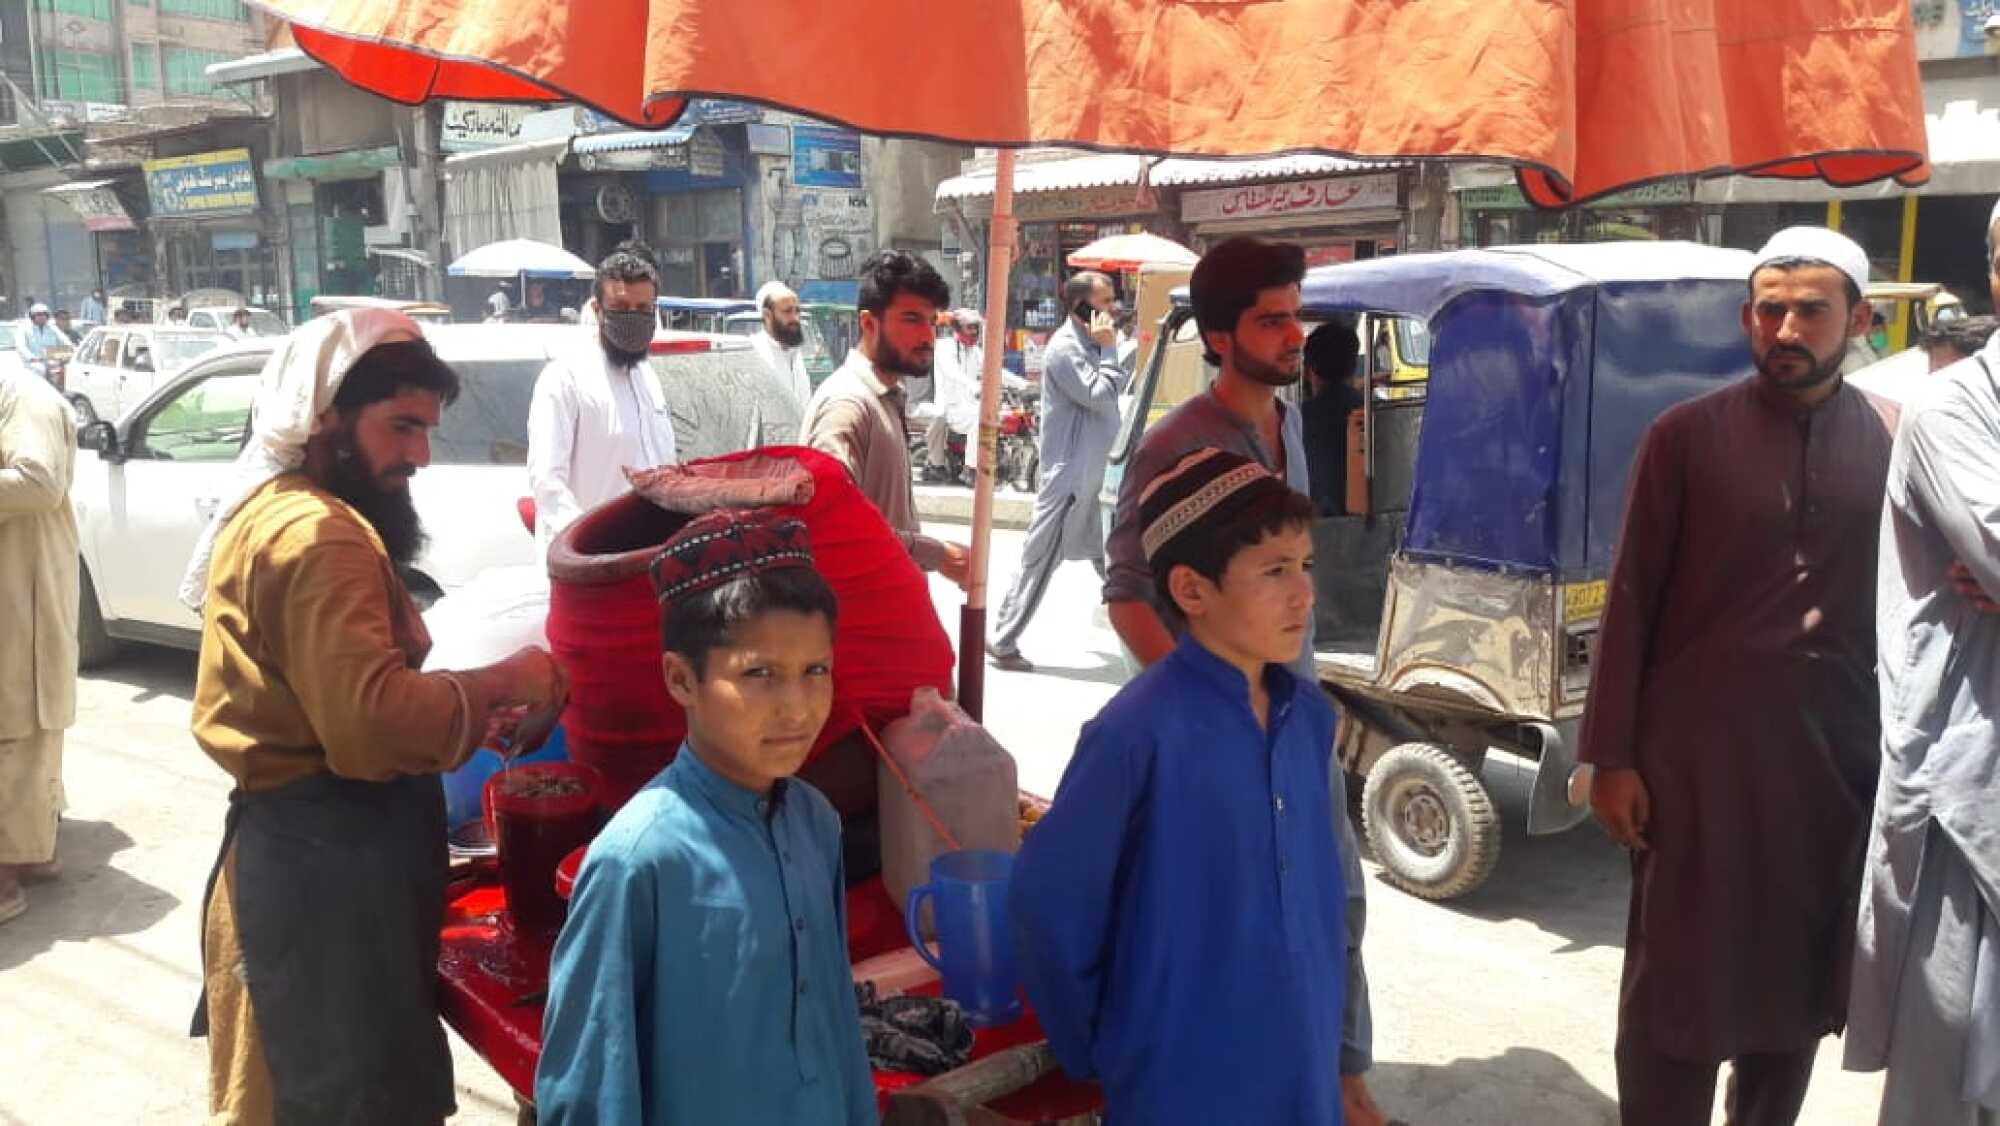 Umar Gul, left, and his cousin Muhammad Siraj work at a lemonade cart in Peshawar, Pakistan.